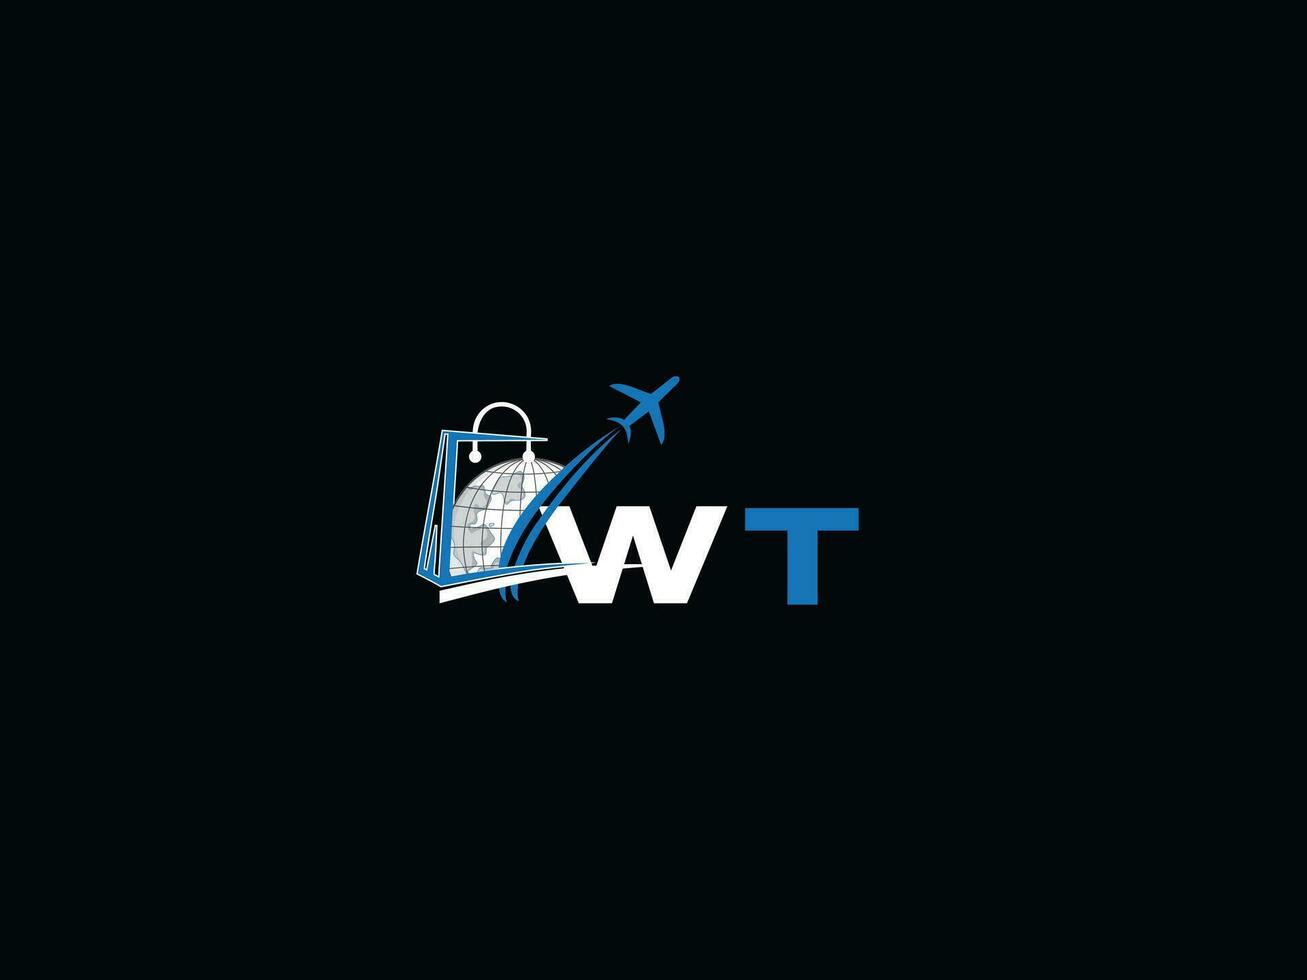 einzigartig Luft Reise wt Logo Symbol, kreativ global wt Initiale Reisen Logo Brief vektor